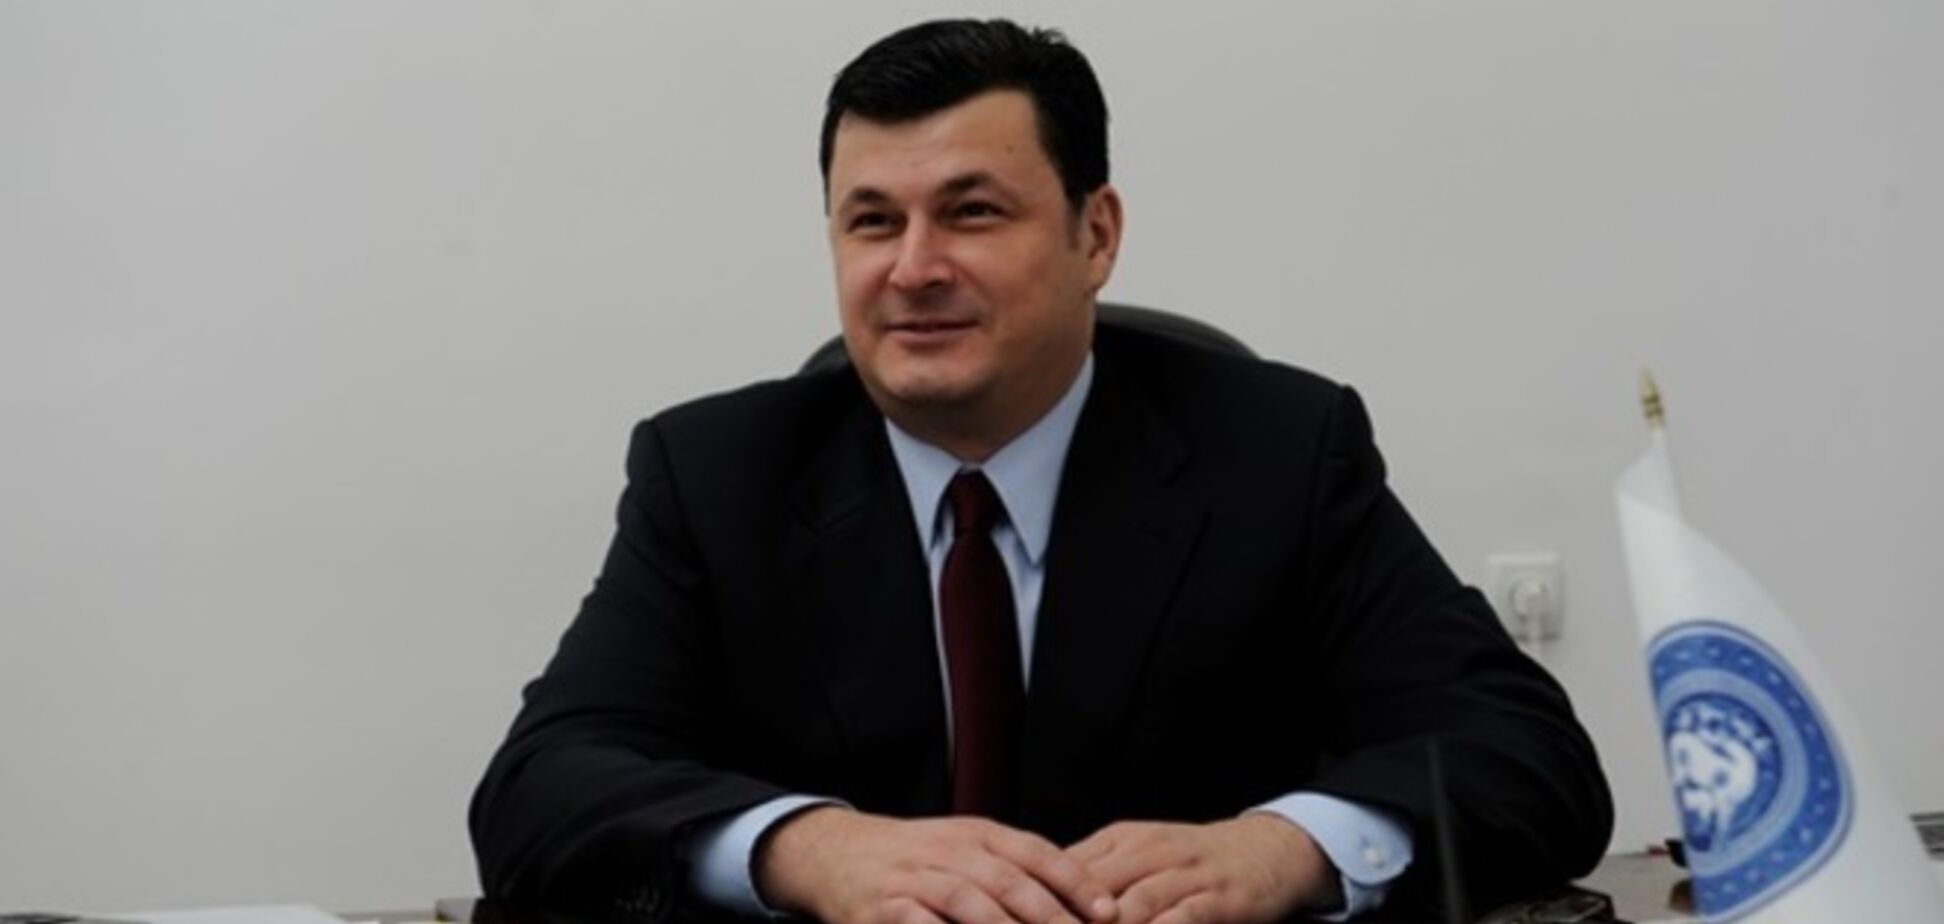 Телетайп. Министр Квиташвили — проба на непереносимость реформаторских лекарств